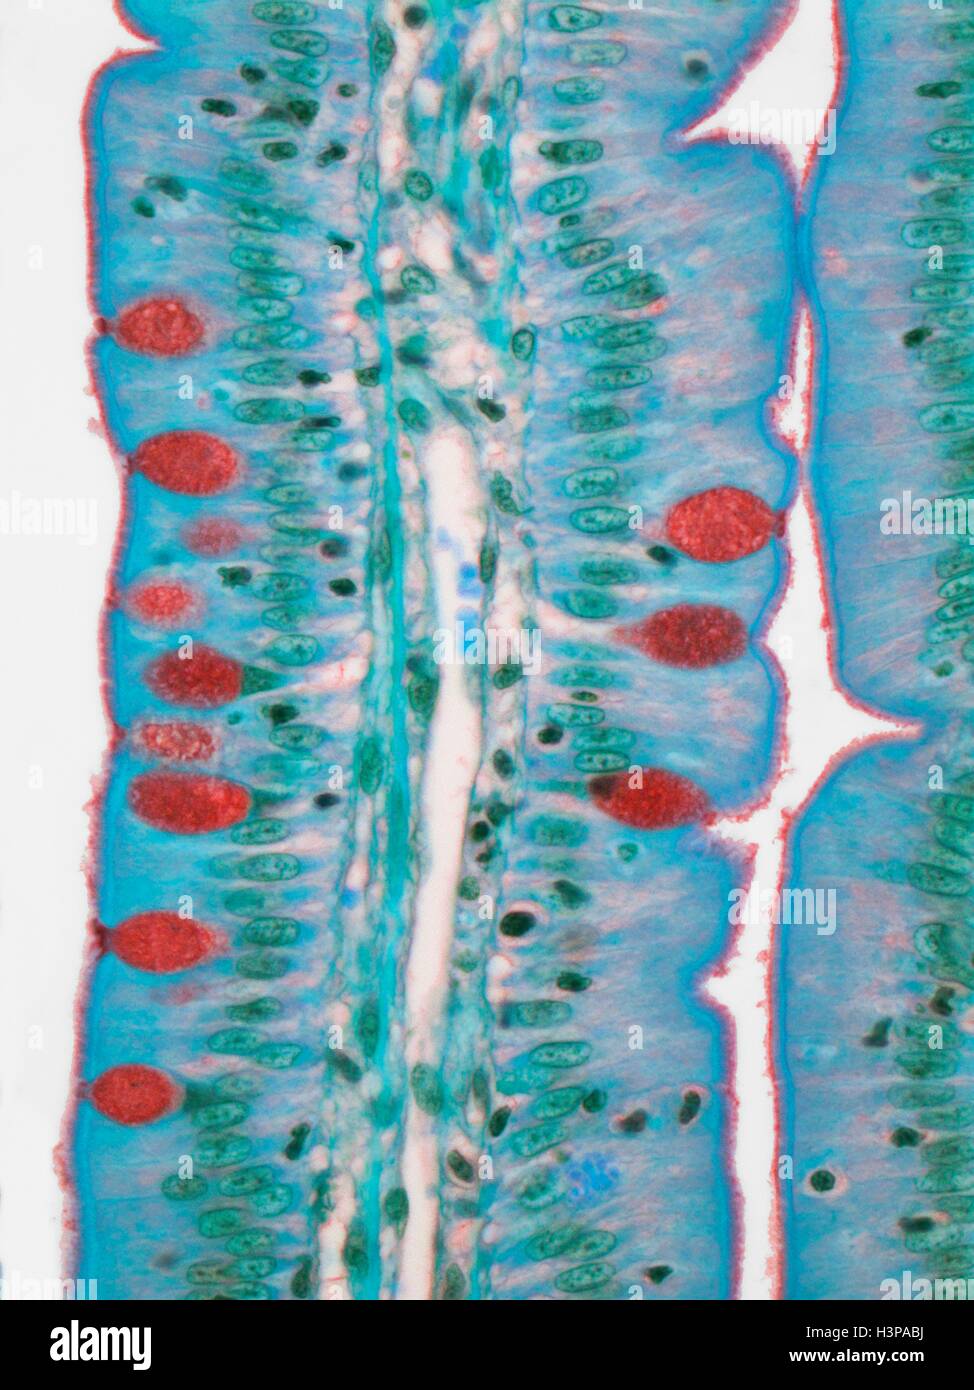 Il piccolo intestino. Micrografia di luce (LM) di una sezione attraverso le dita (villi) del duodeno, la parte più alta del piccolo intestino. Questi aumentano la superficie di assorbimento del cibo. Nell'epitelio colonnare della superficie esterna (blu) sono cellule caliciformi (rosso), che secernono muco per lubrificare il cibo e prevenire l'auto-digestione. La lamina propria (nucleo centrale, blu) contiene il rifornimento di sangue che trasporta i prodotti della digestione. Ingrandimento: x500 quando stampata a 10 cm di larghezza. Foto Stock